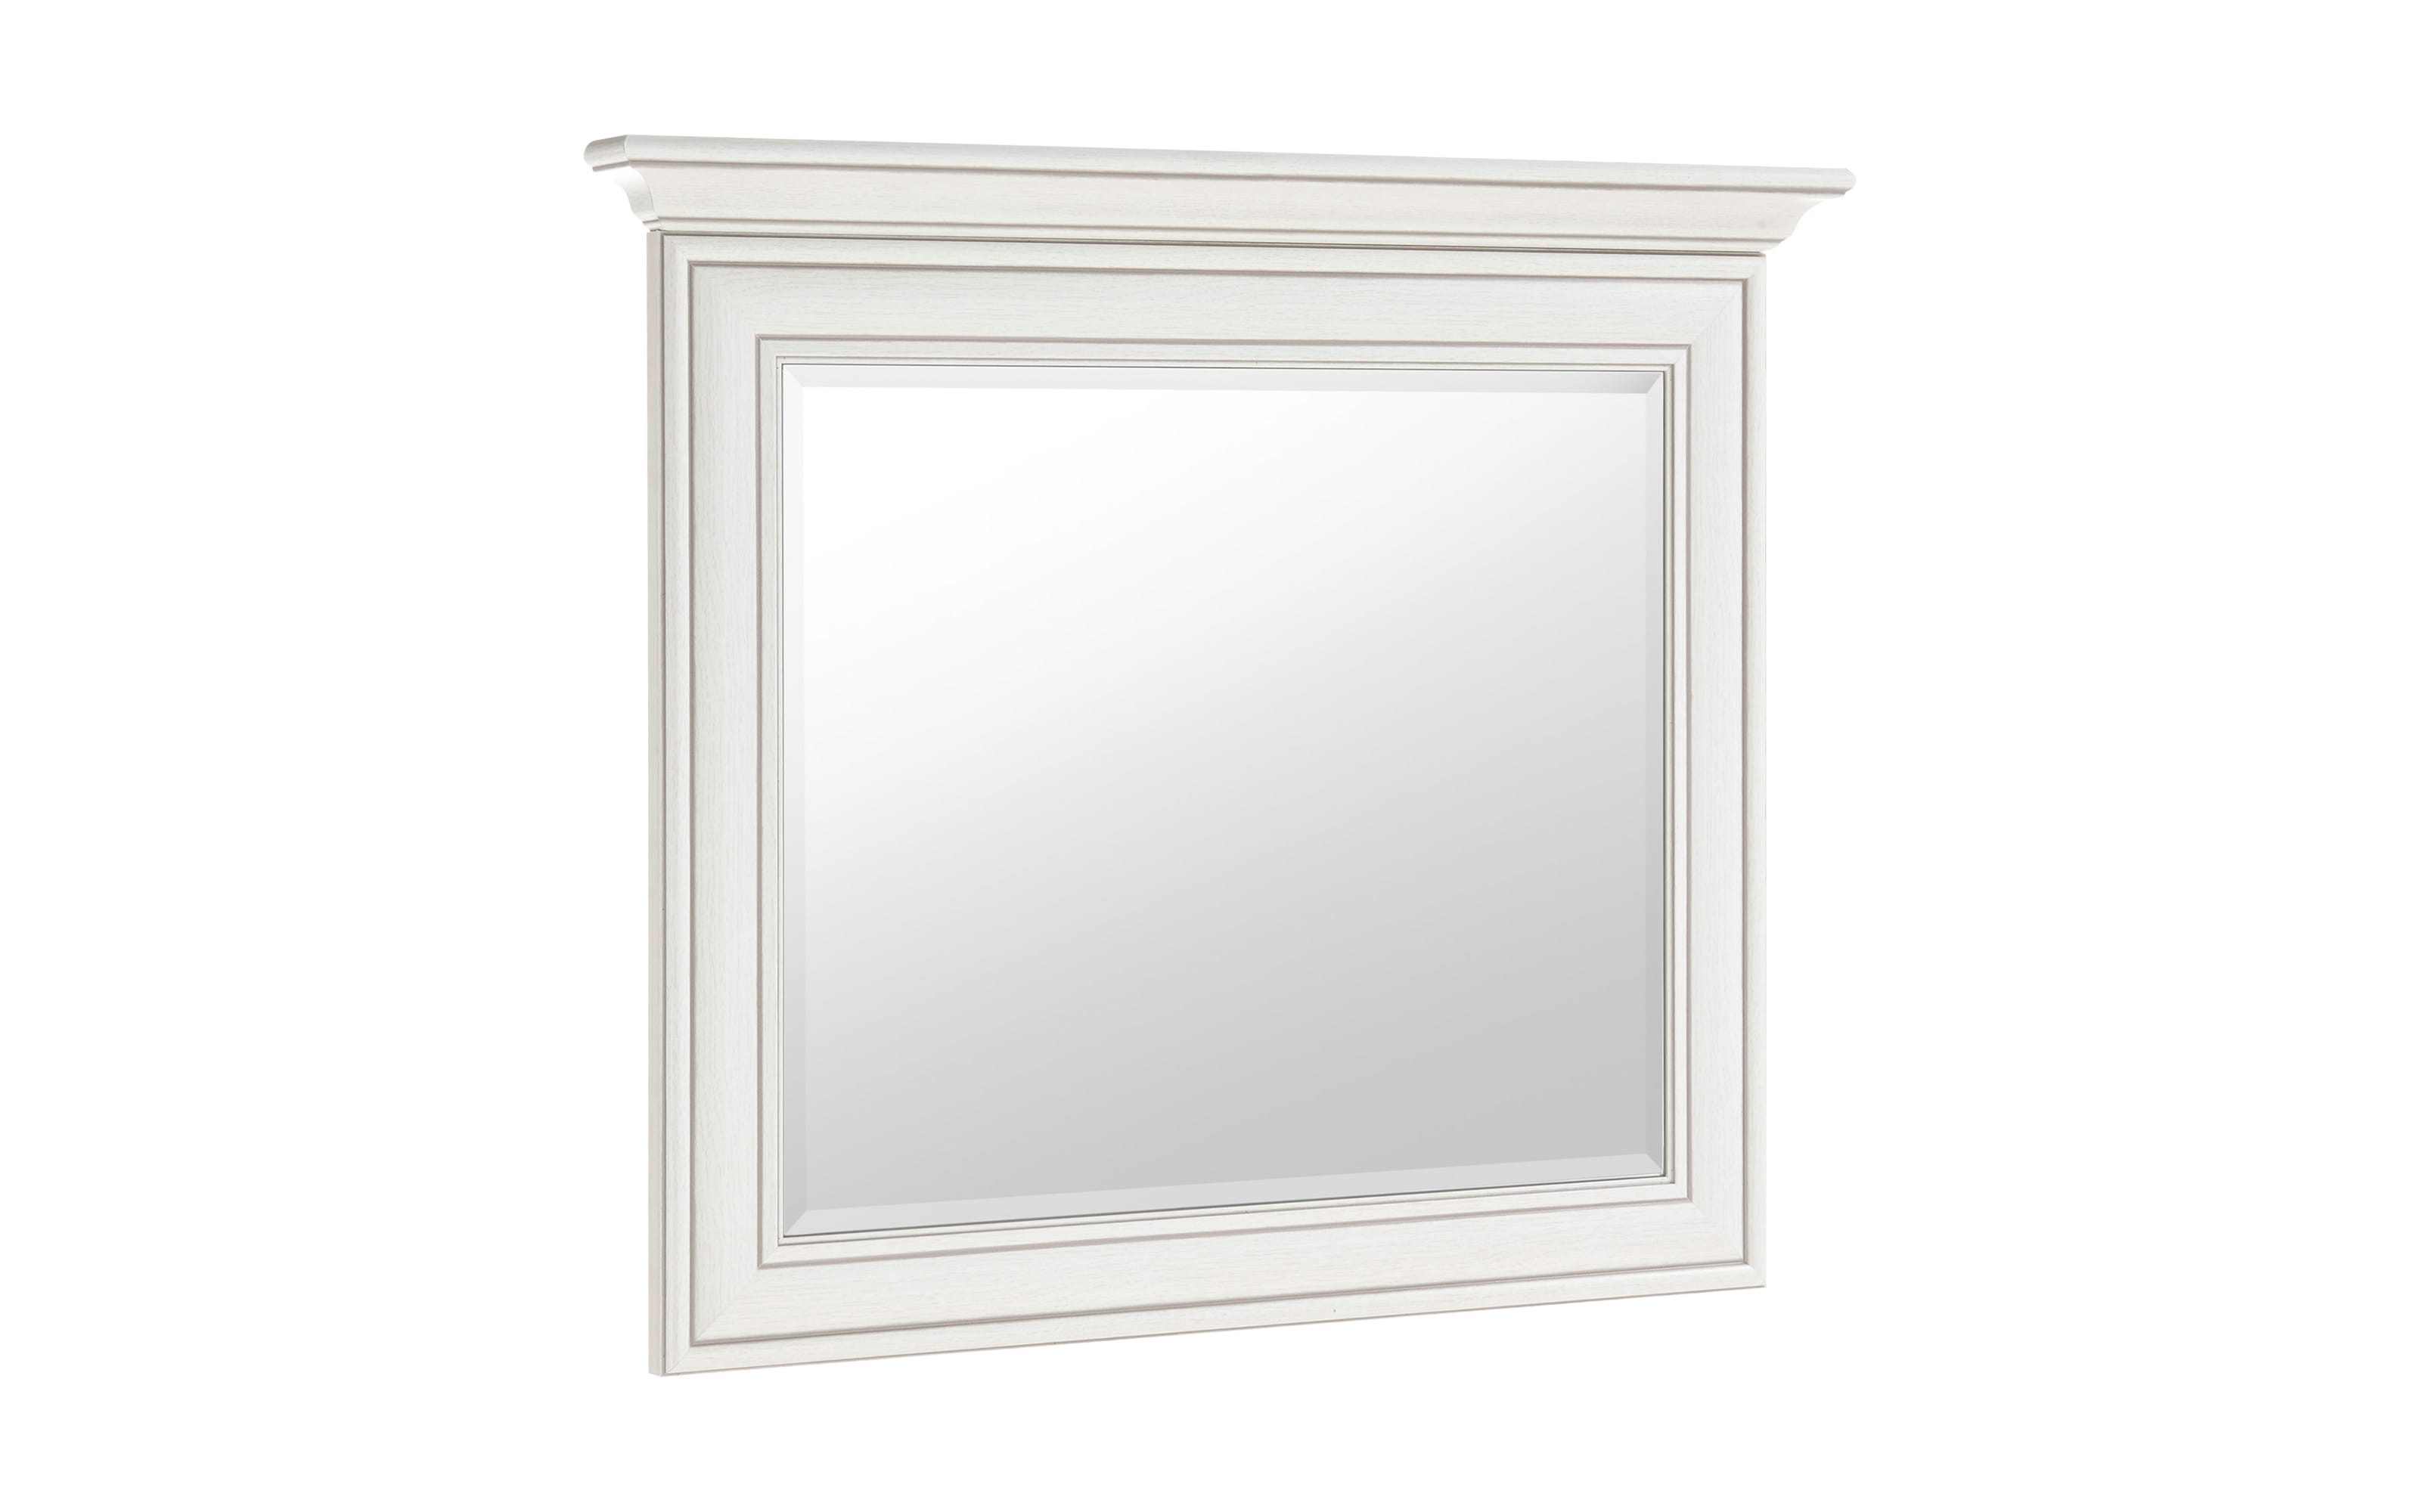 Spiegel Venedig, weiß, 88 x 76 cm